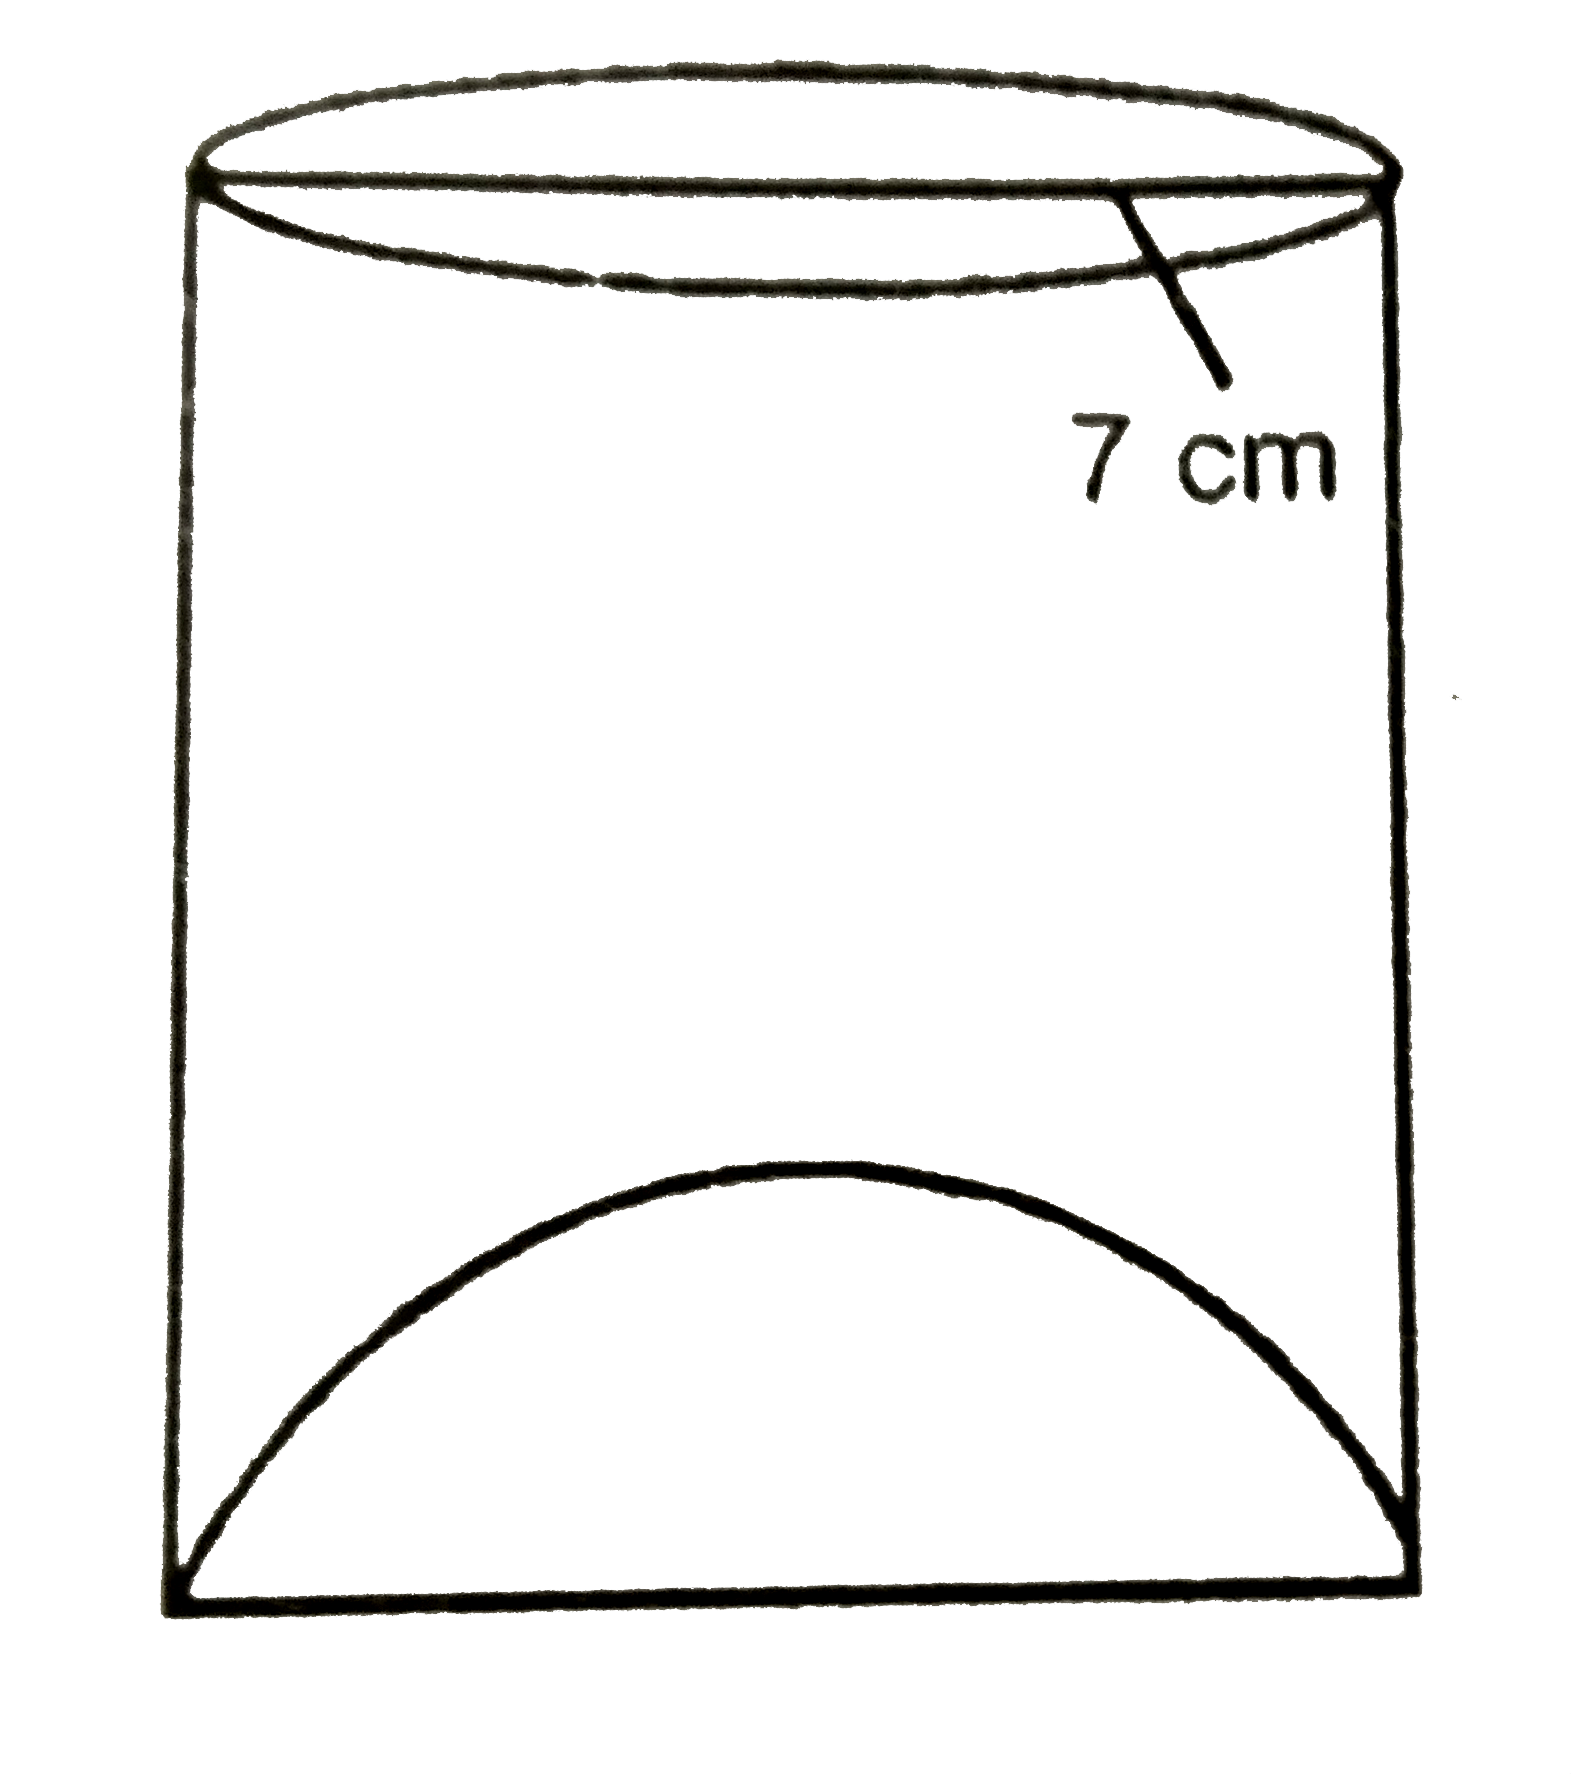 एक जूस (Juice) बेचनेवाला आपने ग्राहक को आकृति में दिखाए गिलासों से जूस देता था। बेलनाकार गिलास का आतंरिक व्यास 7cm और ऊंचाई 12cm है किन्तु गिलास के निचले आधार में एक उभरा हुआ गोला था जिसमे गिलास की धारिता कम हो गयी है। गिलास की आभासी धारिता और वास्तविक धारिता ज्ञात कीजिए।